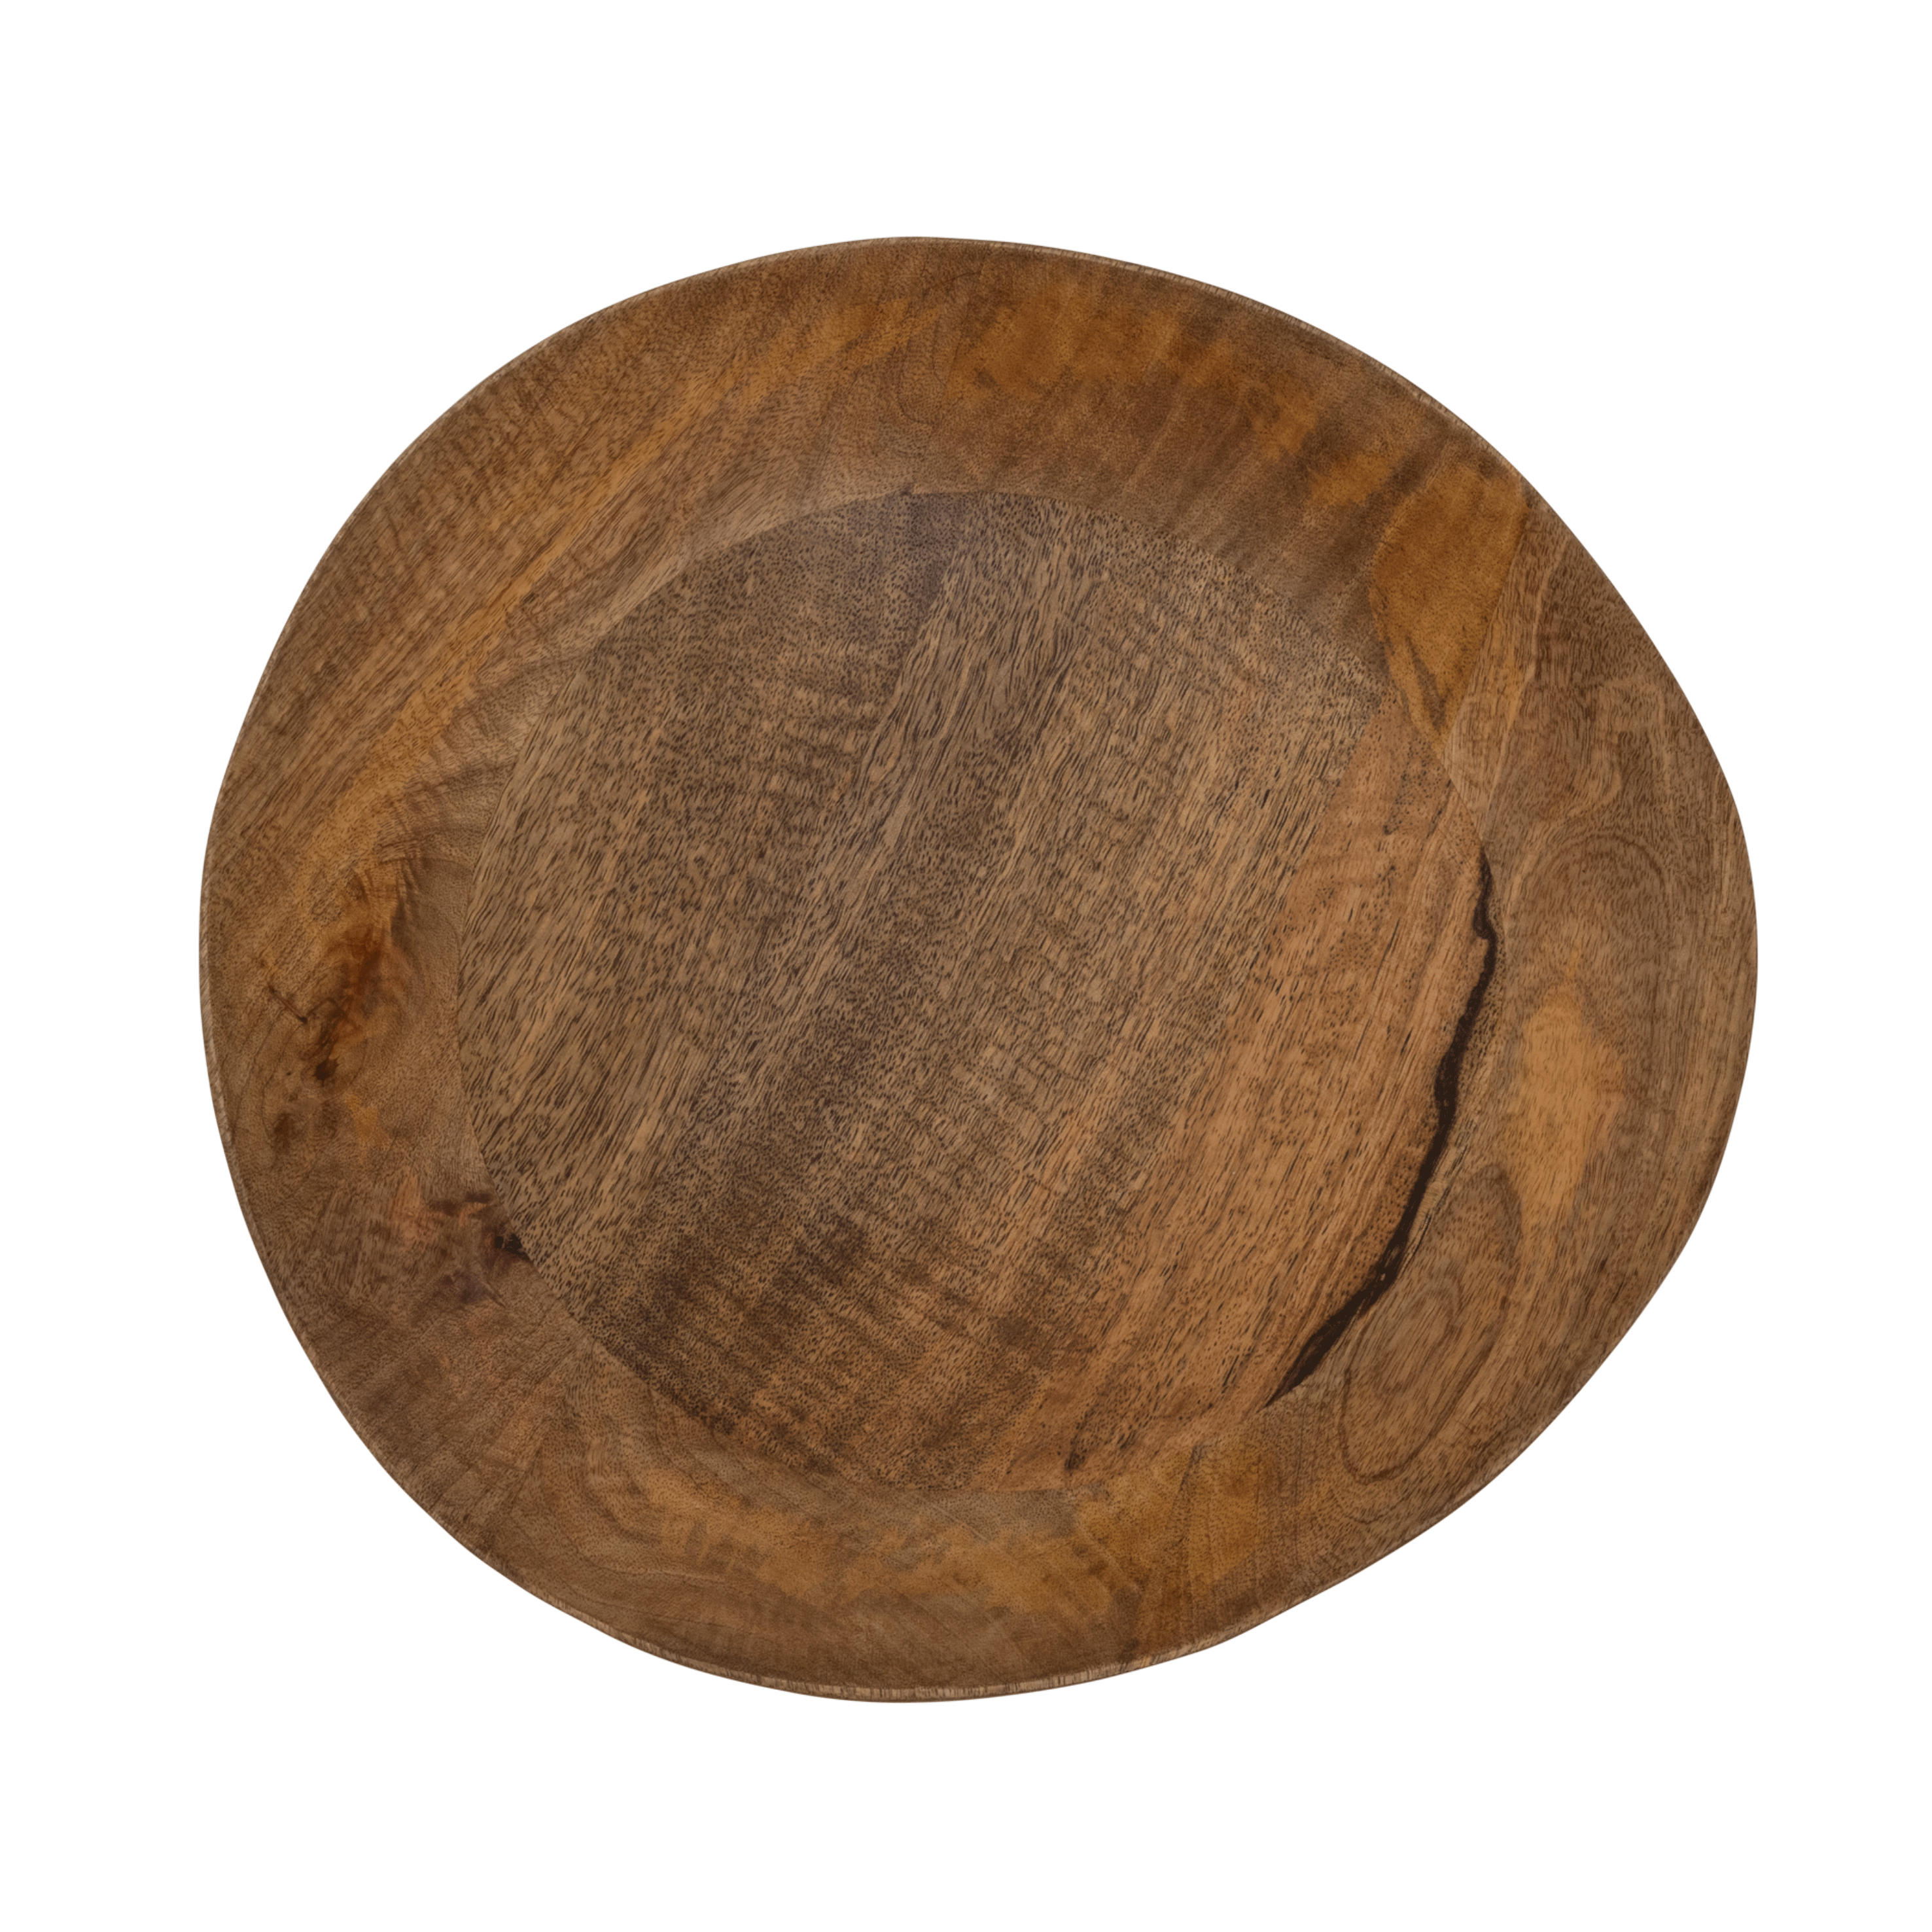 Unc Bowl Mango Wood Golden Oak Gift